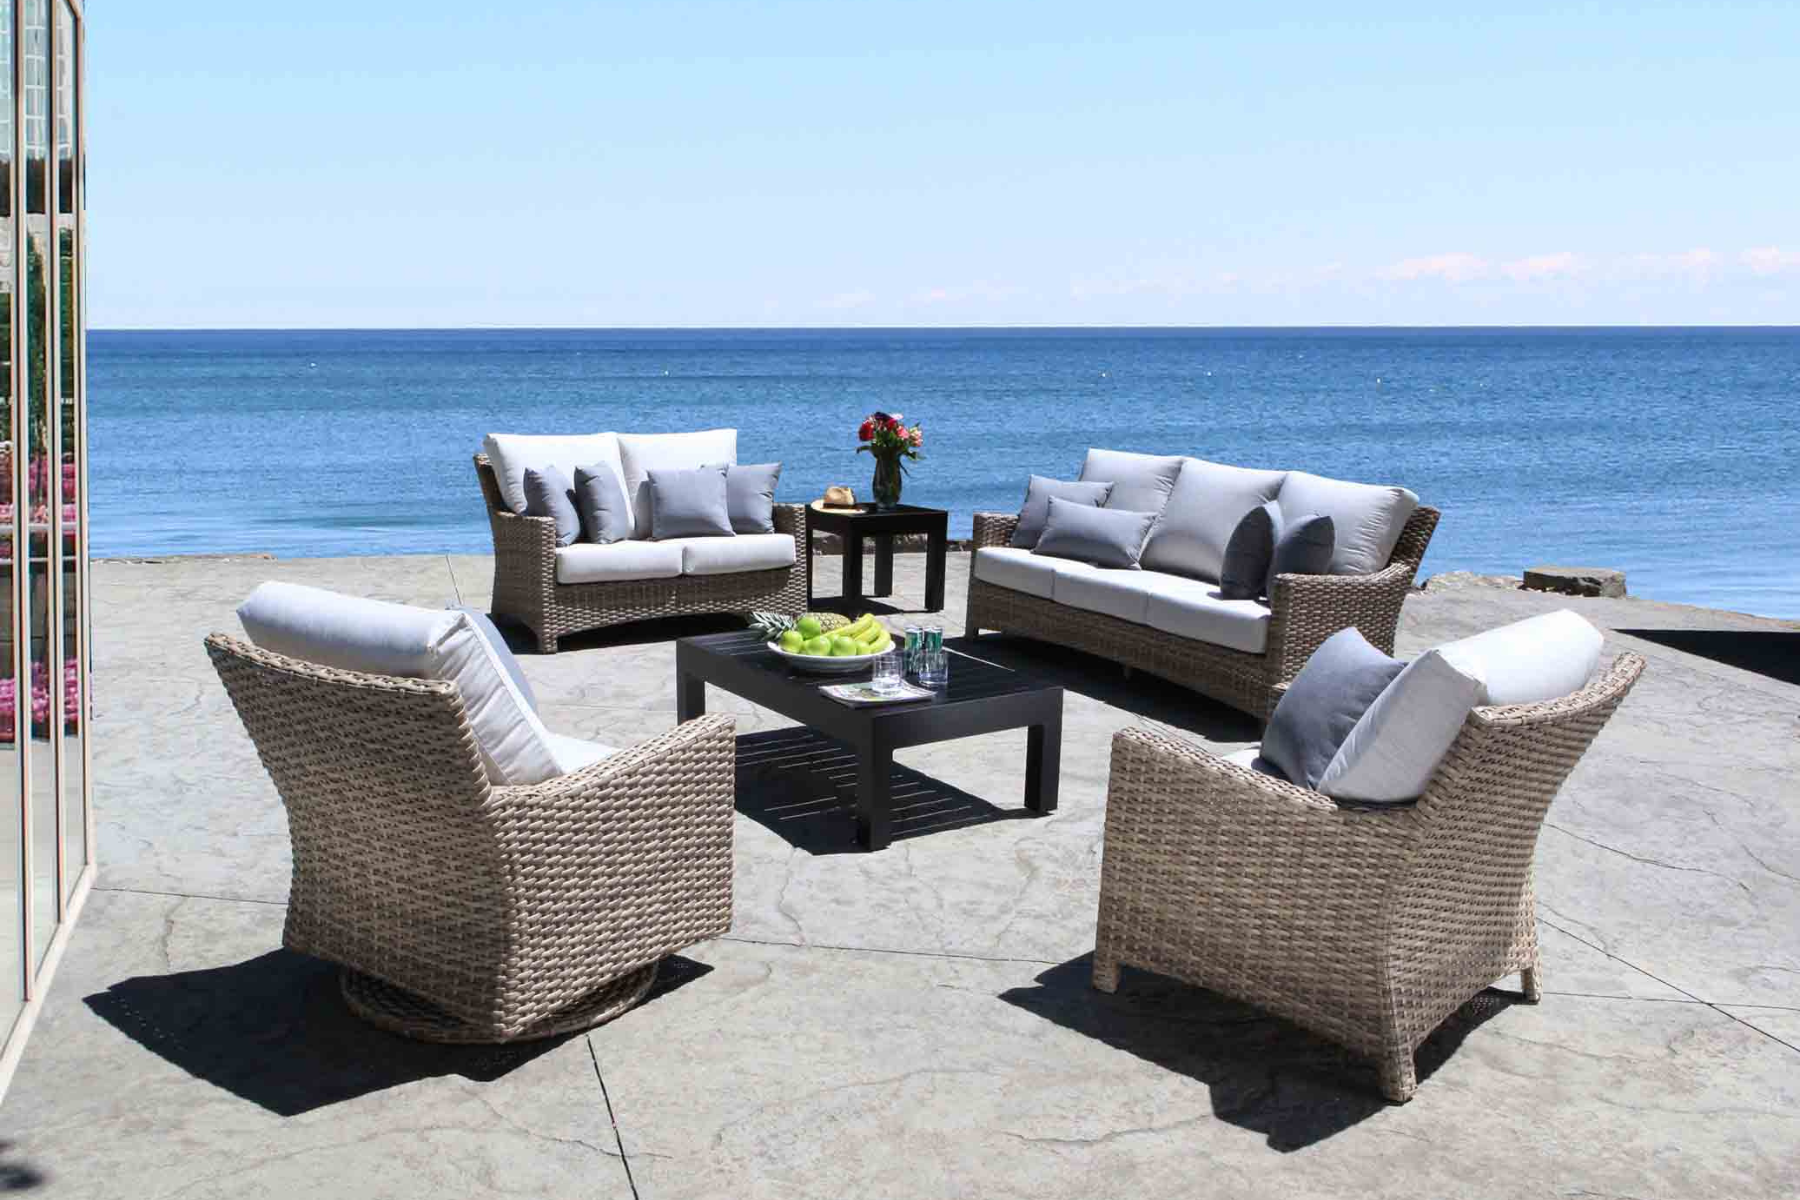 Cabana Coast wicker furniture patio decor trend